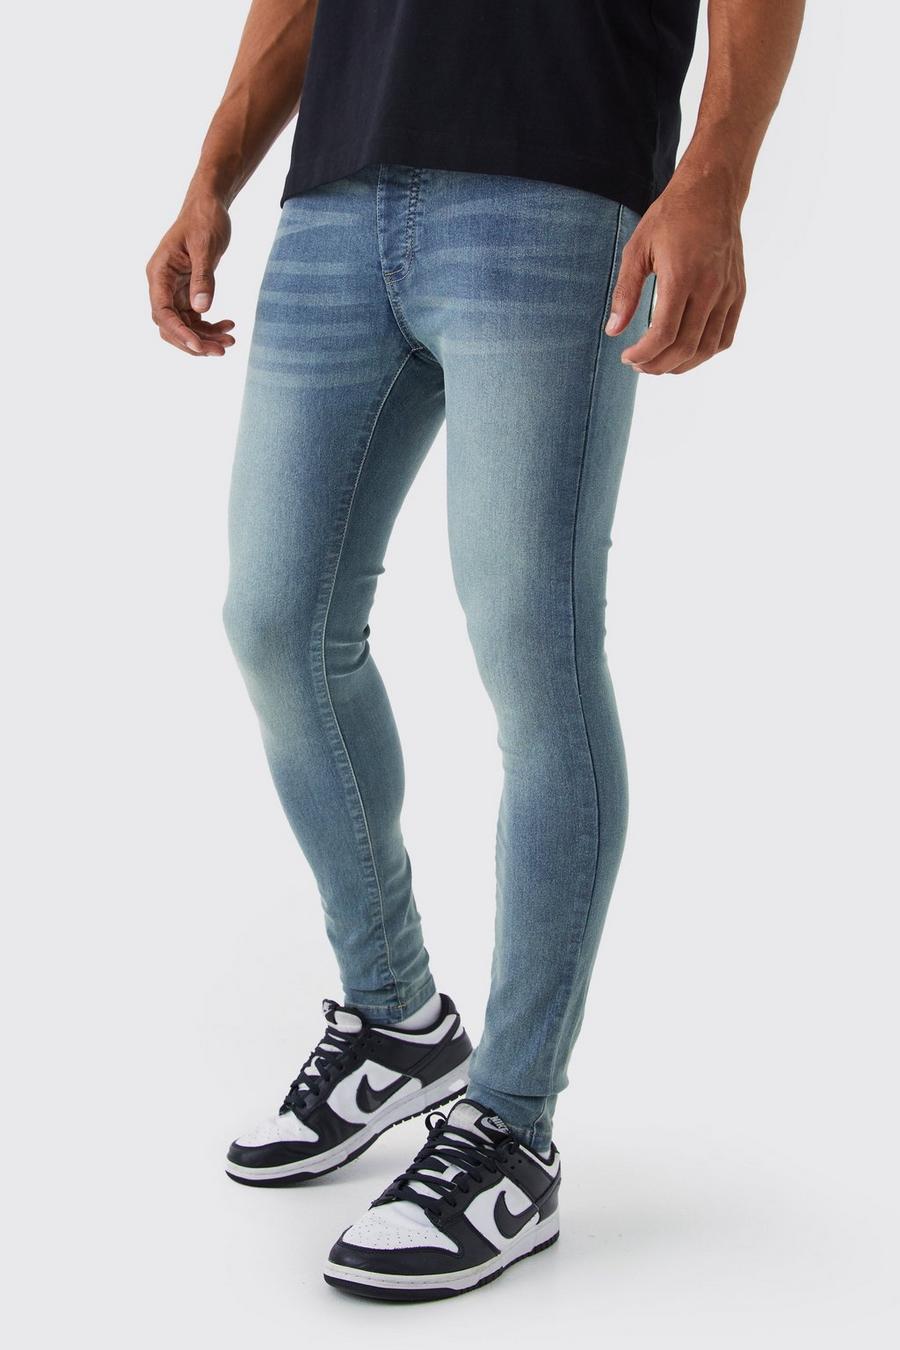 Jeans Super Skinny Fit in Stretch, Antique blue